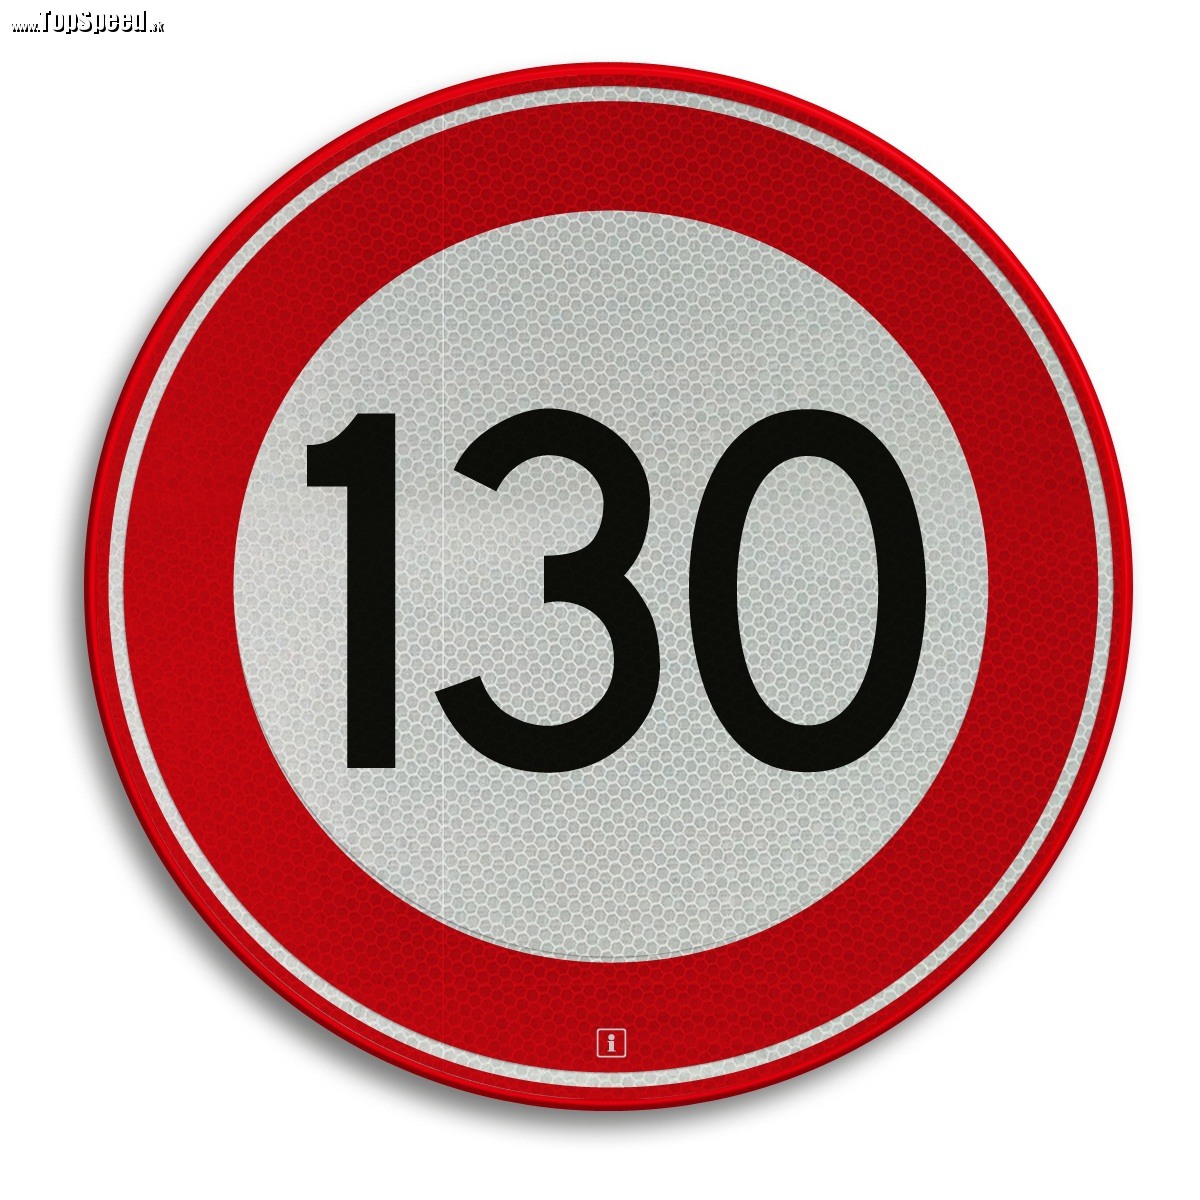 V minulosti bolo 130 km/h na hranici konštrukčnej rýchlosti väčšiny áut.